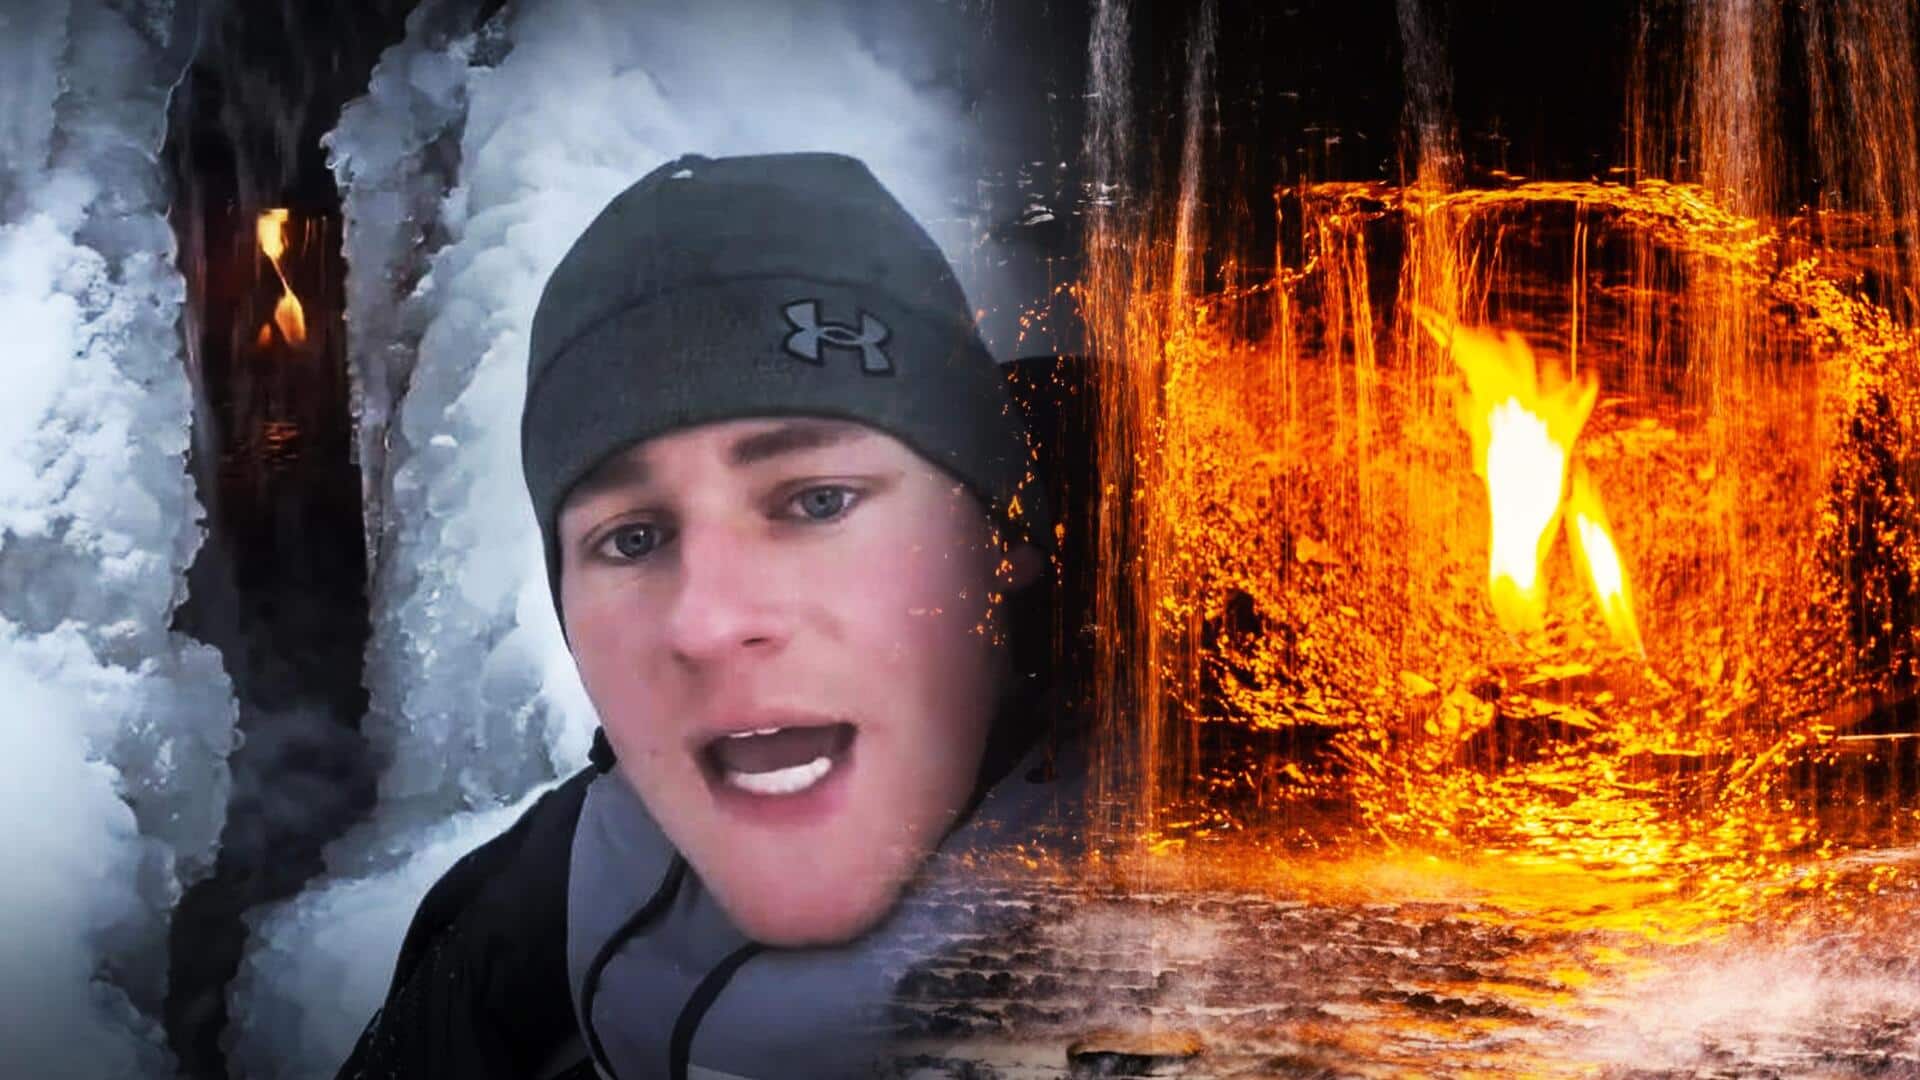 अमेरिका: झरने के अंदर जलती नजर आई 'अनंत ज्वाला', घूमते हुए युवक ने ढूंढ निकाली